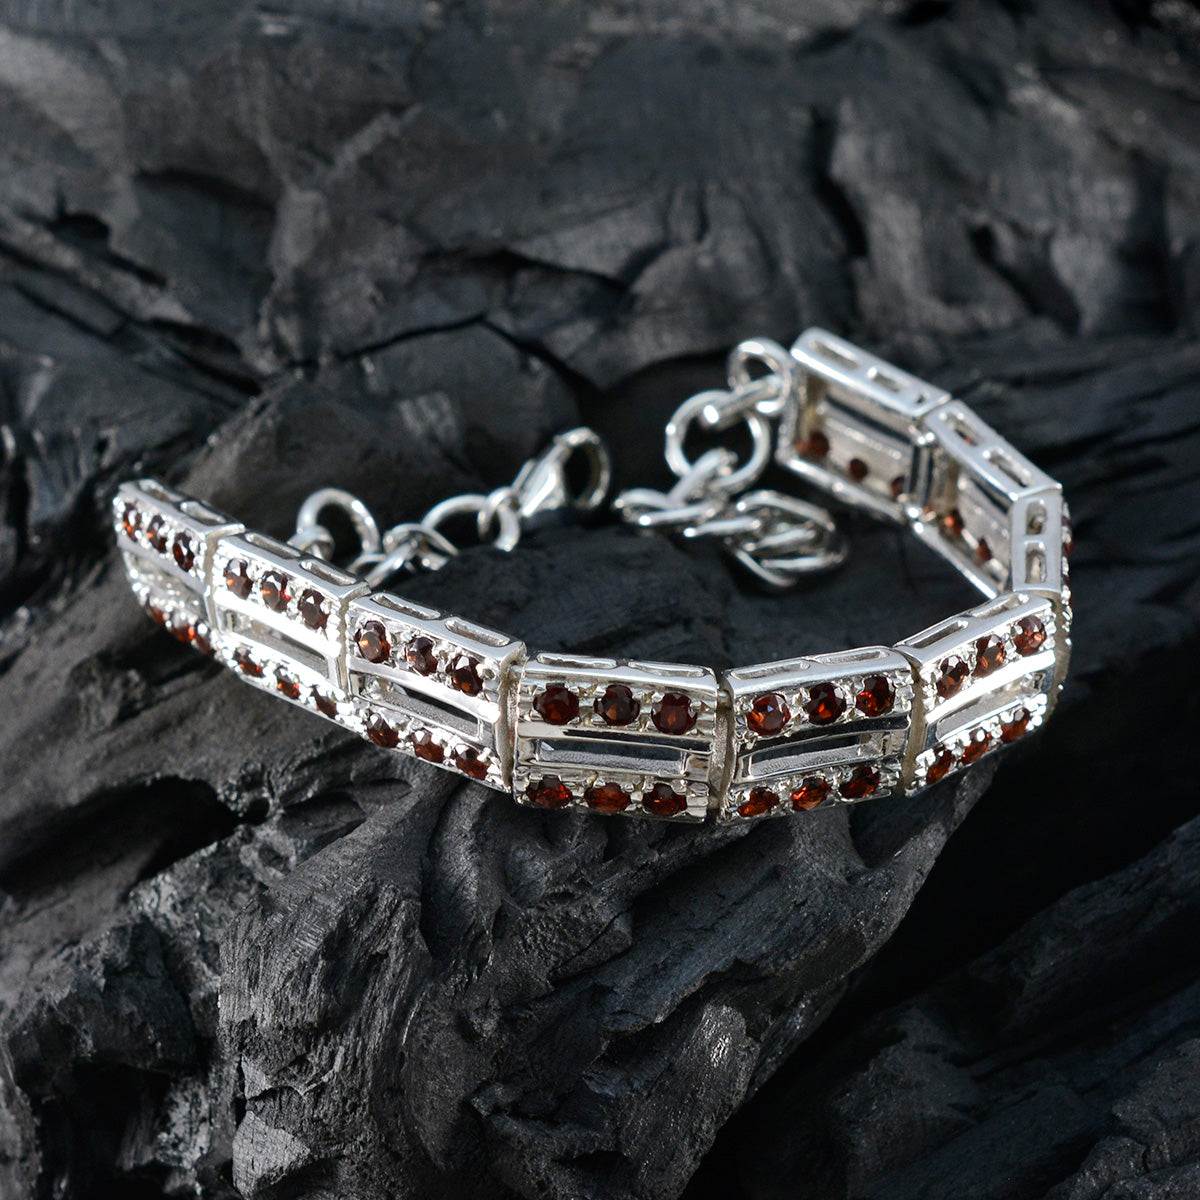 Riyo Wunderschönes 925er-Sterlingsilber-Armband für Damen, Granat-Armband, Krappenfassung, Armband mit Fischhaken-Gliederarmband, Größe L: 15,2–21,6 cm.